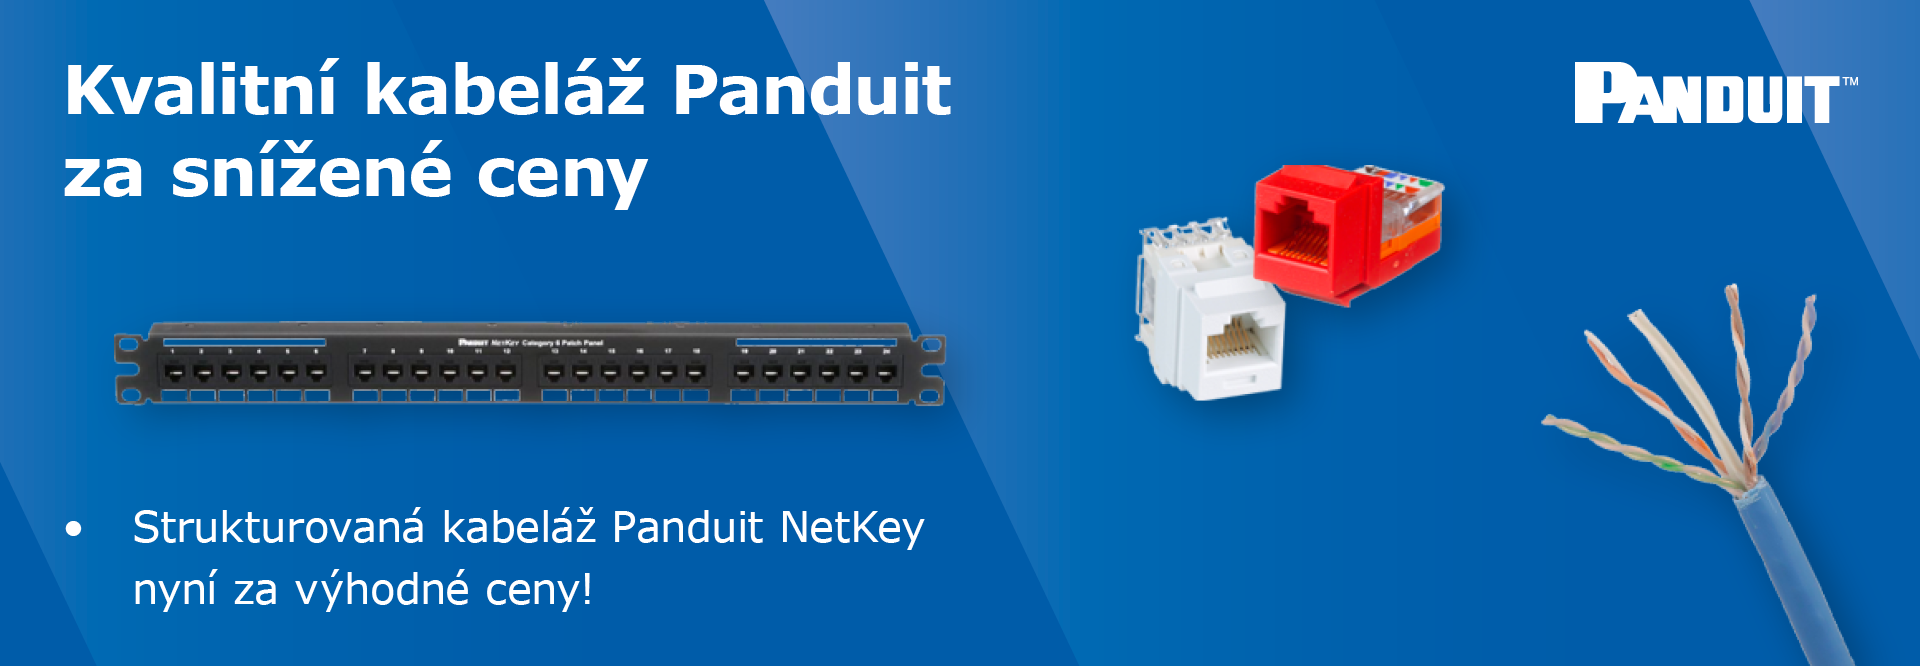 Kvalitní kabeláž Panduit NetKey